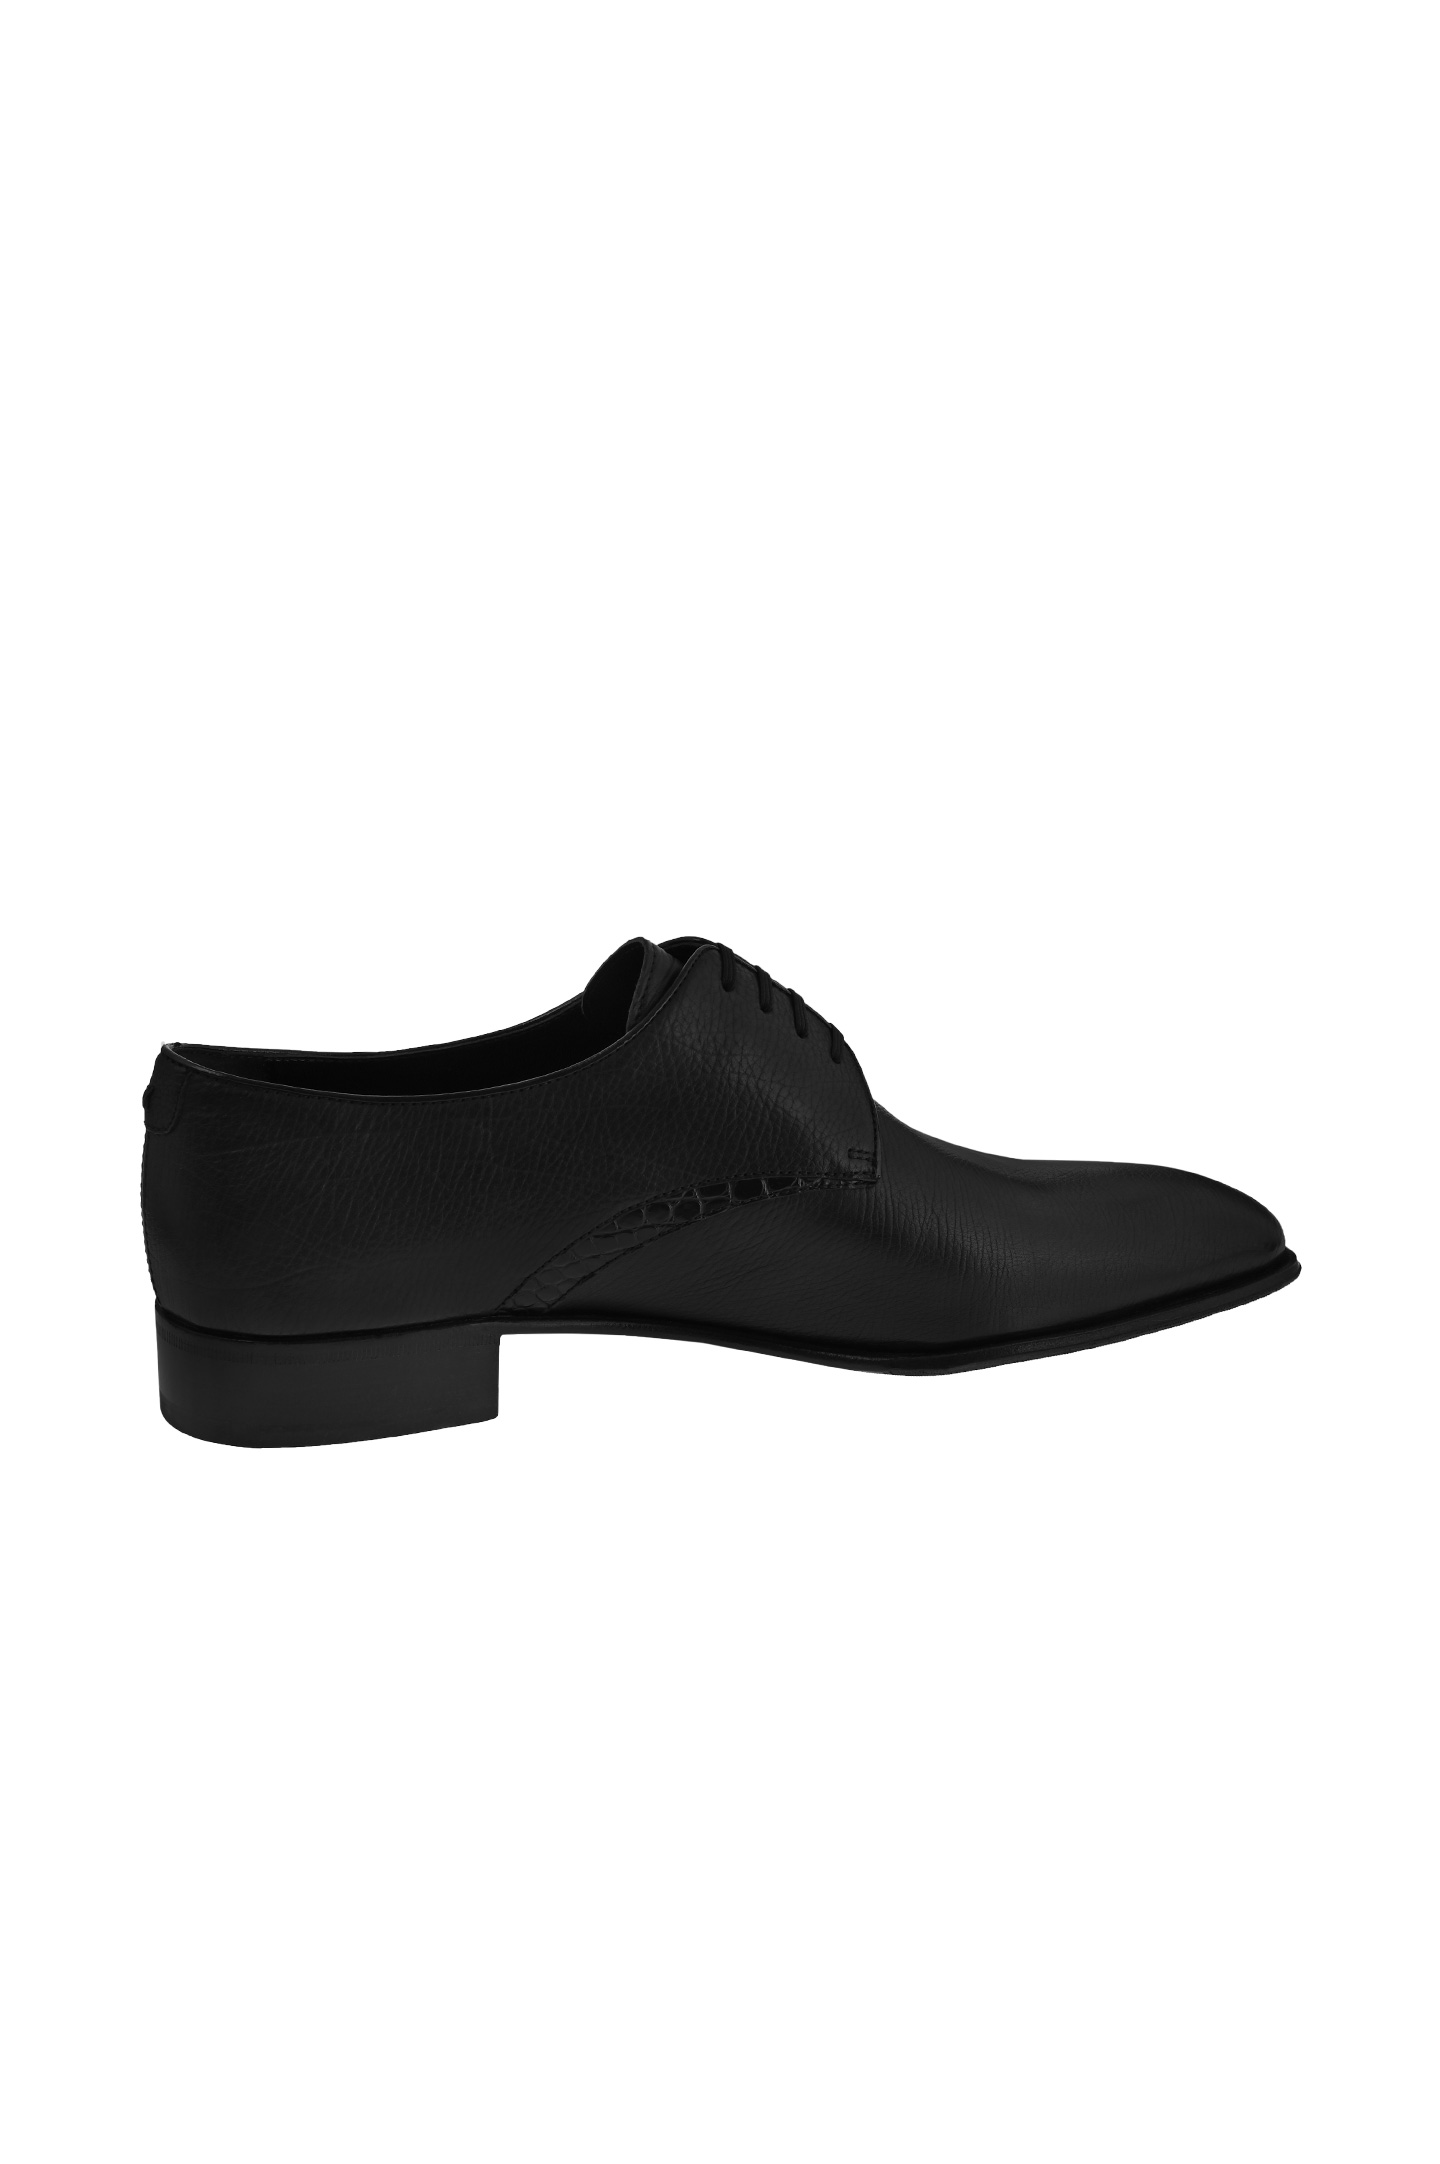 Туфли ARTIOLI 06S189, цвет: Черный, Мужской